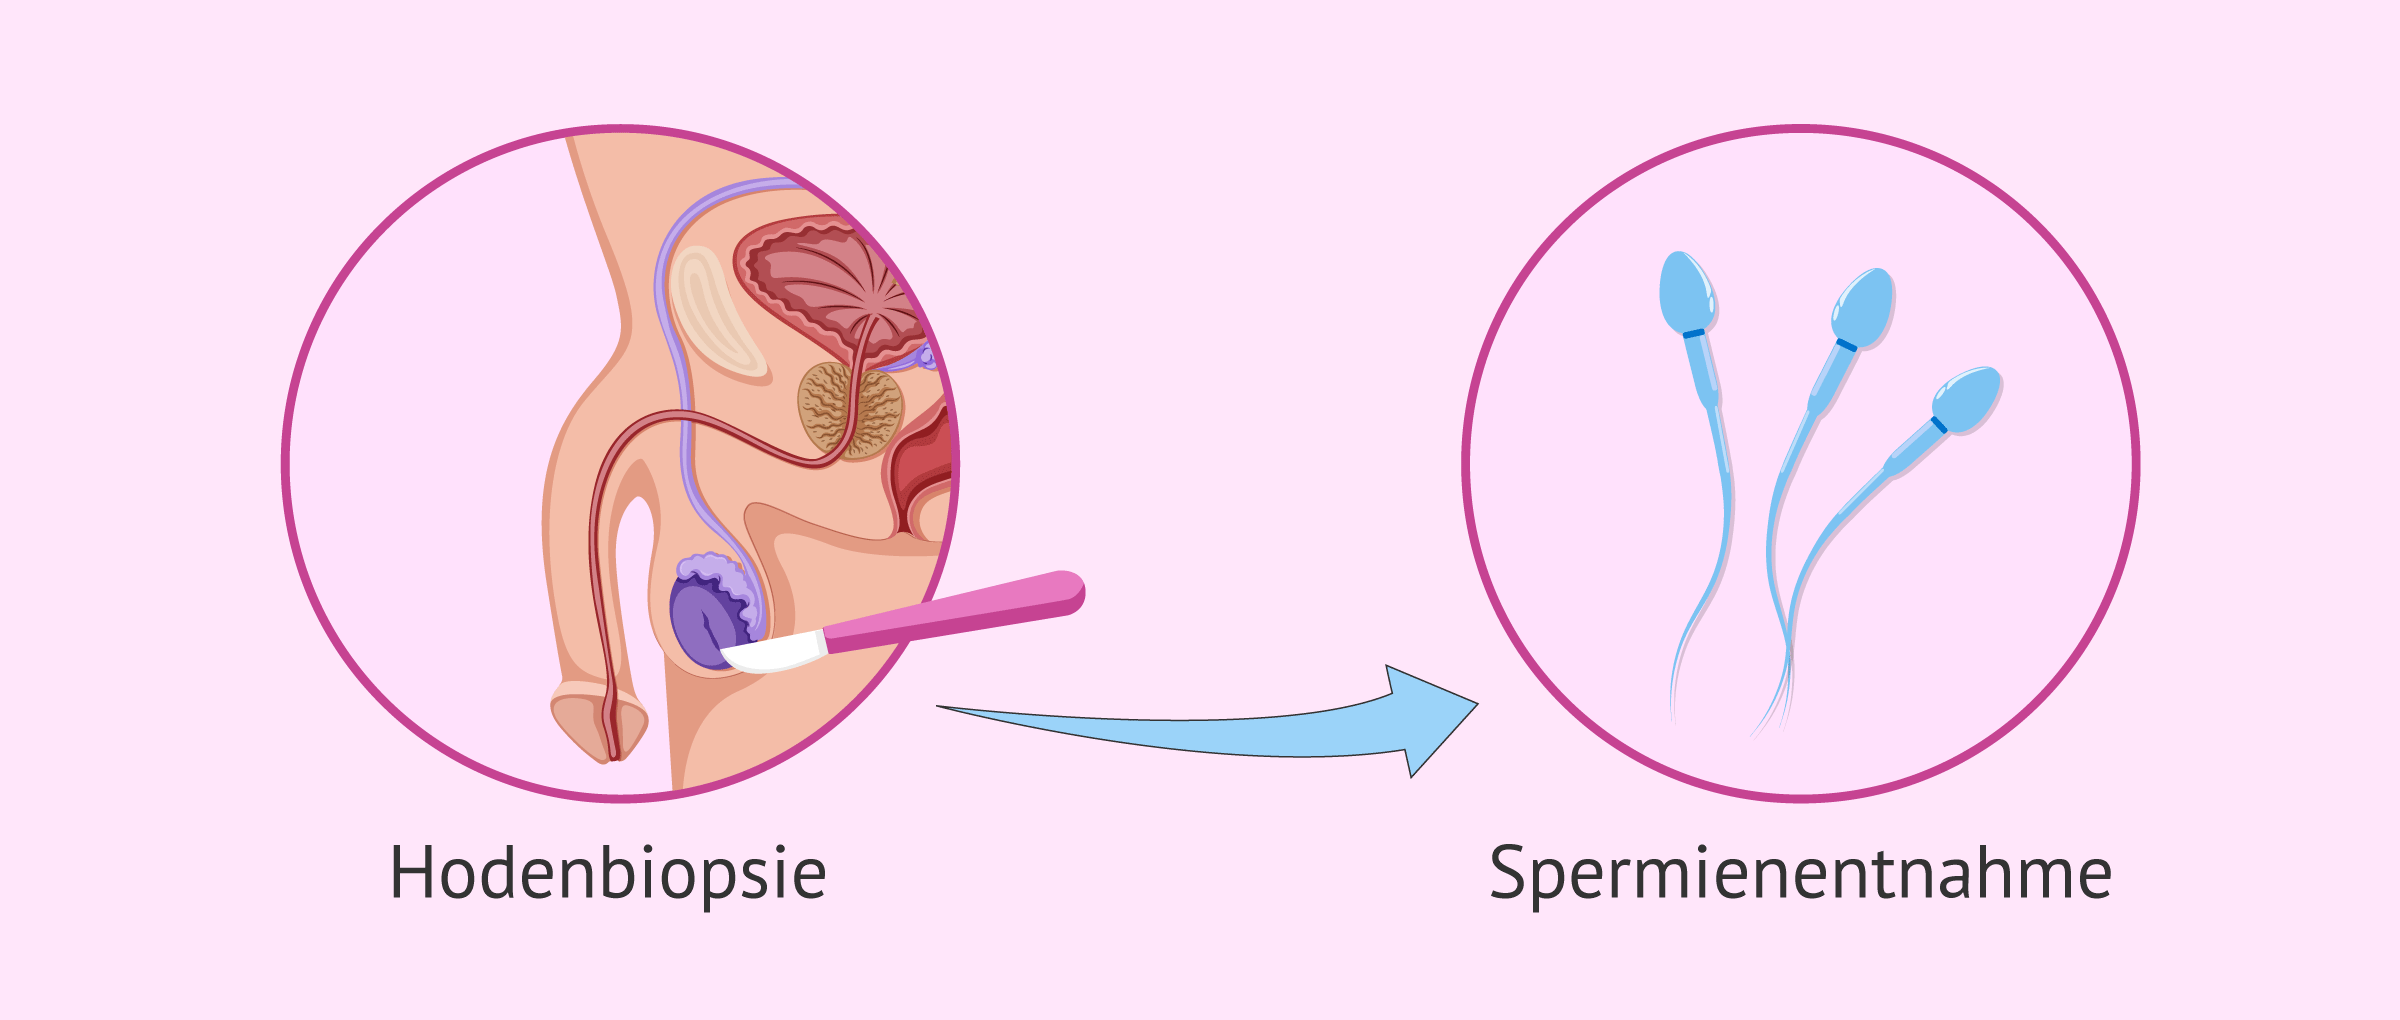 Hodenbiopsie zur Überprüfung der Spermienproduktion